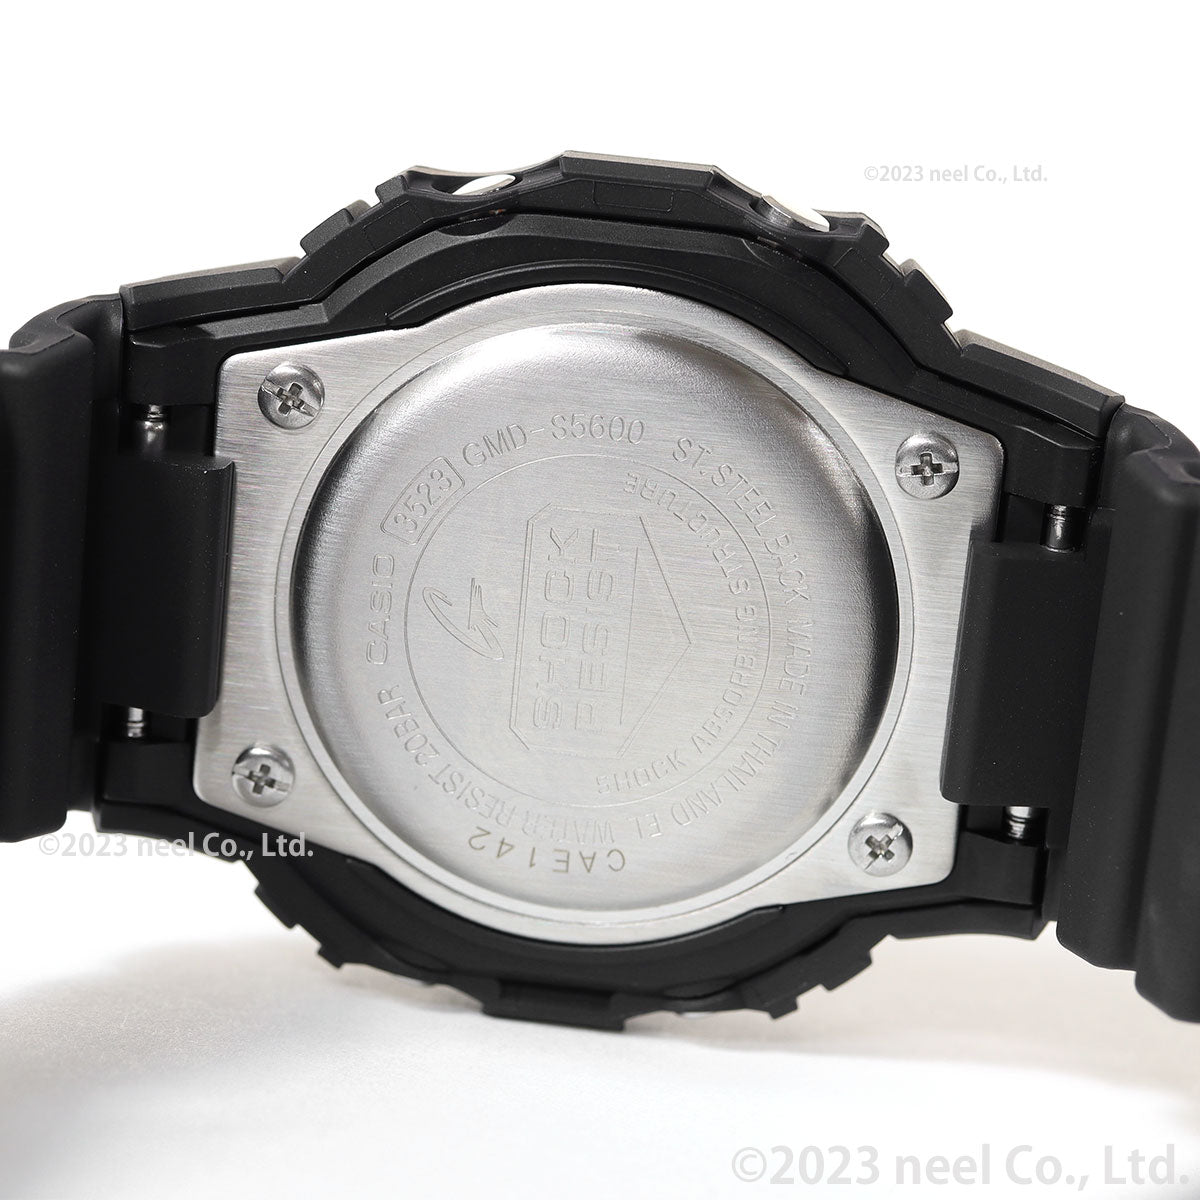 G-SHOCK デジタル カシオ Gショック CASIO デジタル 腕時計 メンズ レディース GMD-S5600-1JF DW-5600 小型化・薄型化モデル